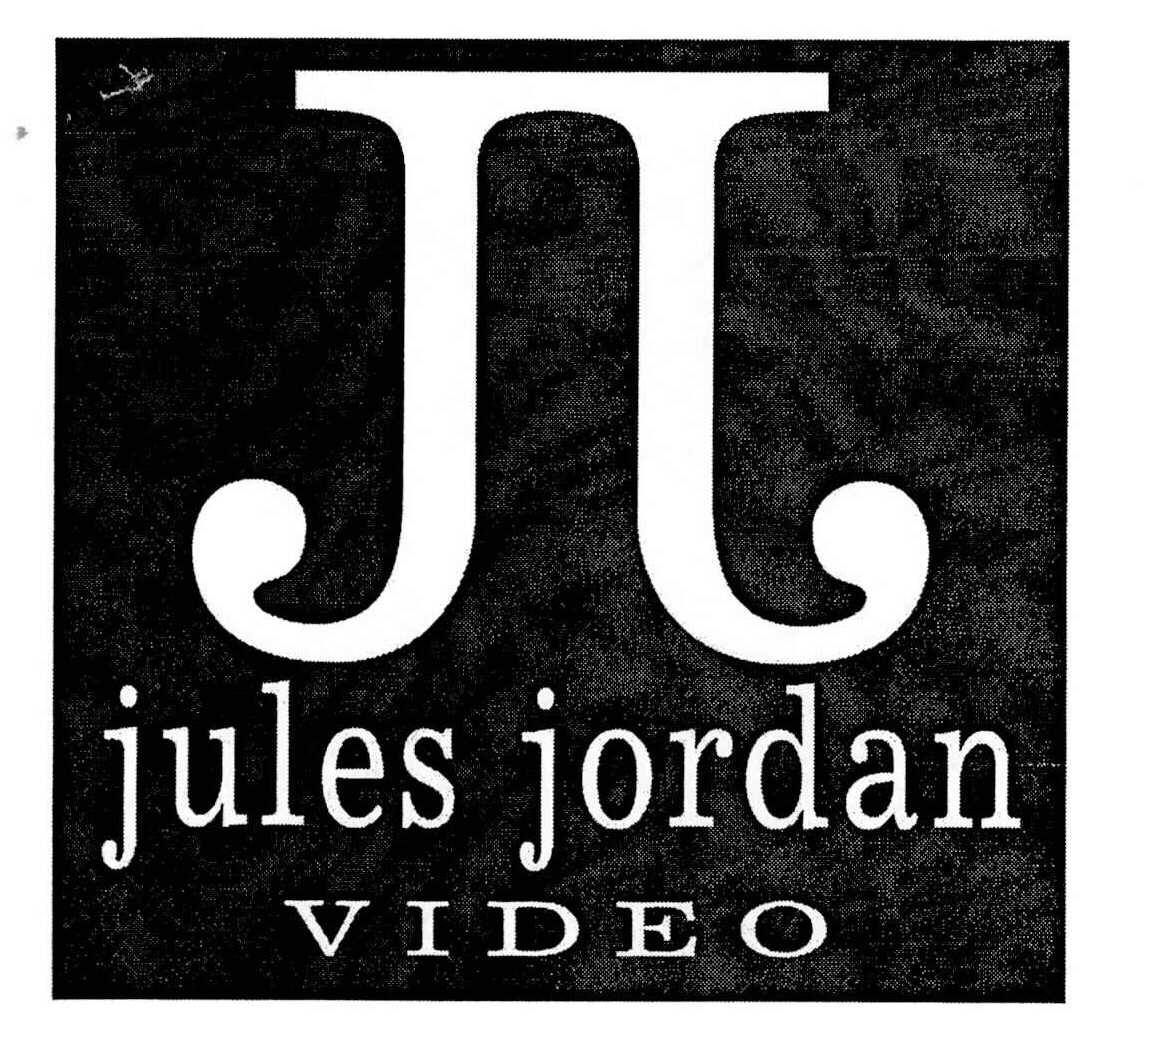 skill Anesthetic sinner JJ JULES JORDAN VIDEO - Jules Jordan Video, Inc. Trademark Registration